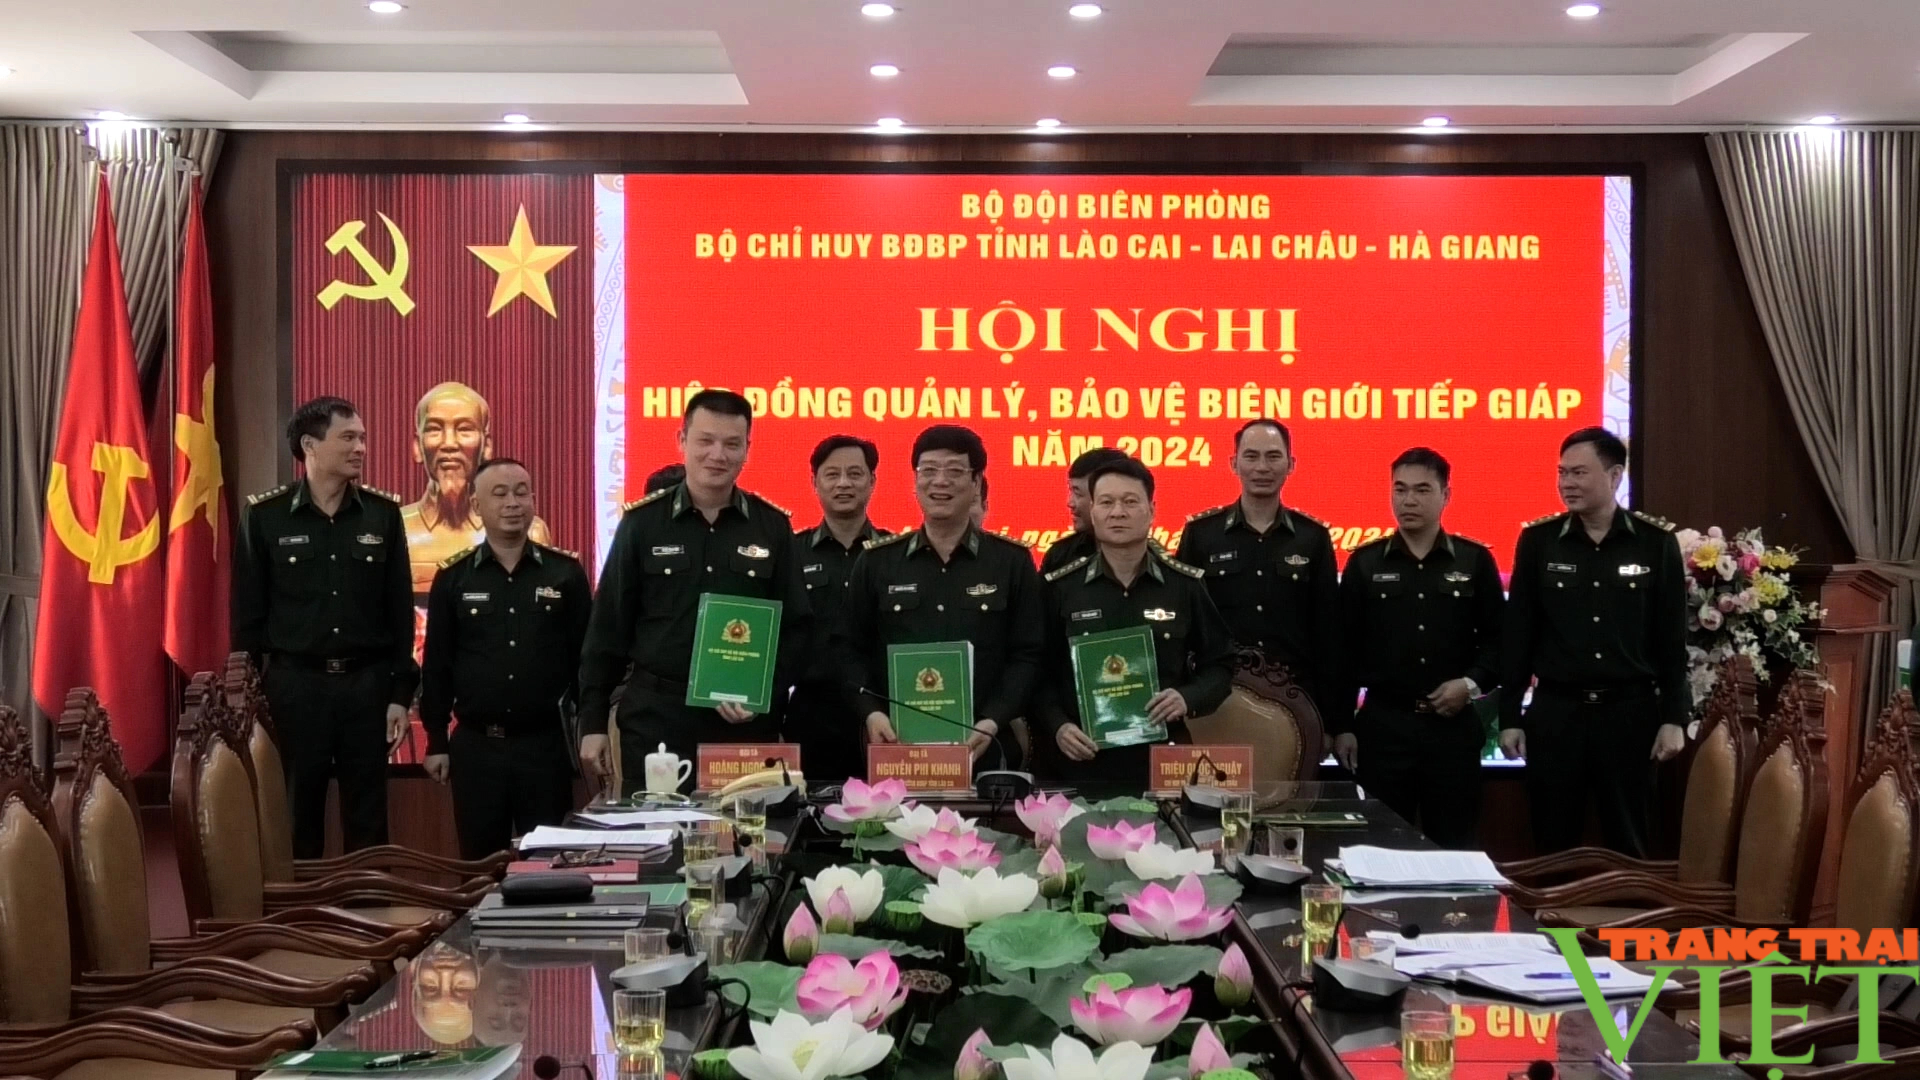 Bộ đội Biên phòng tỉnh Lai Châu, Lào Cai, Hà Giang hiệp đồng bảo vệ biên giới tiếp giáp- Ảnh 1.